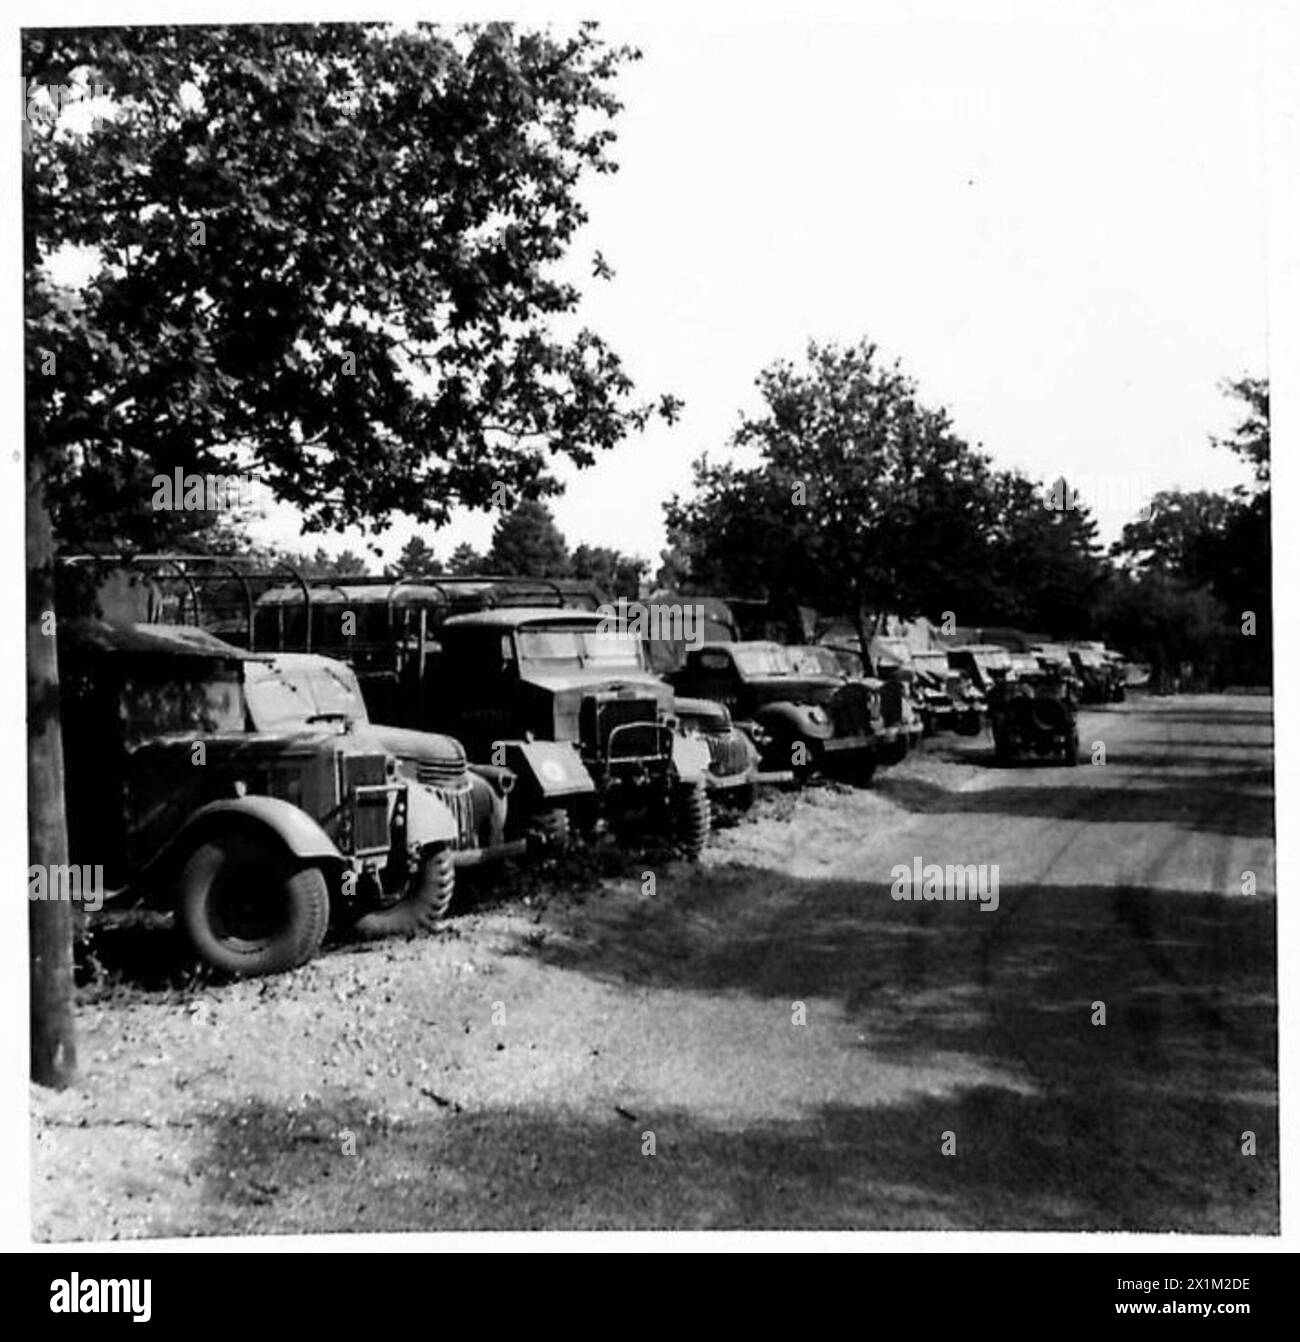 MISSION SPÉCIALE POUR W.S.7. - Camions lourds [divers] Burnham. No 2 V.R.d, armée britannique Banque D'Images